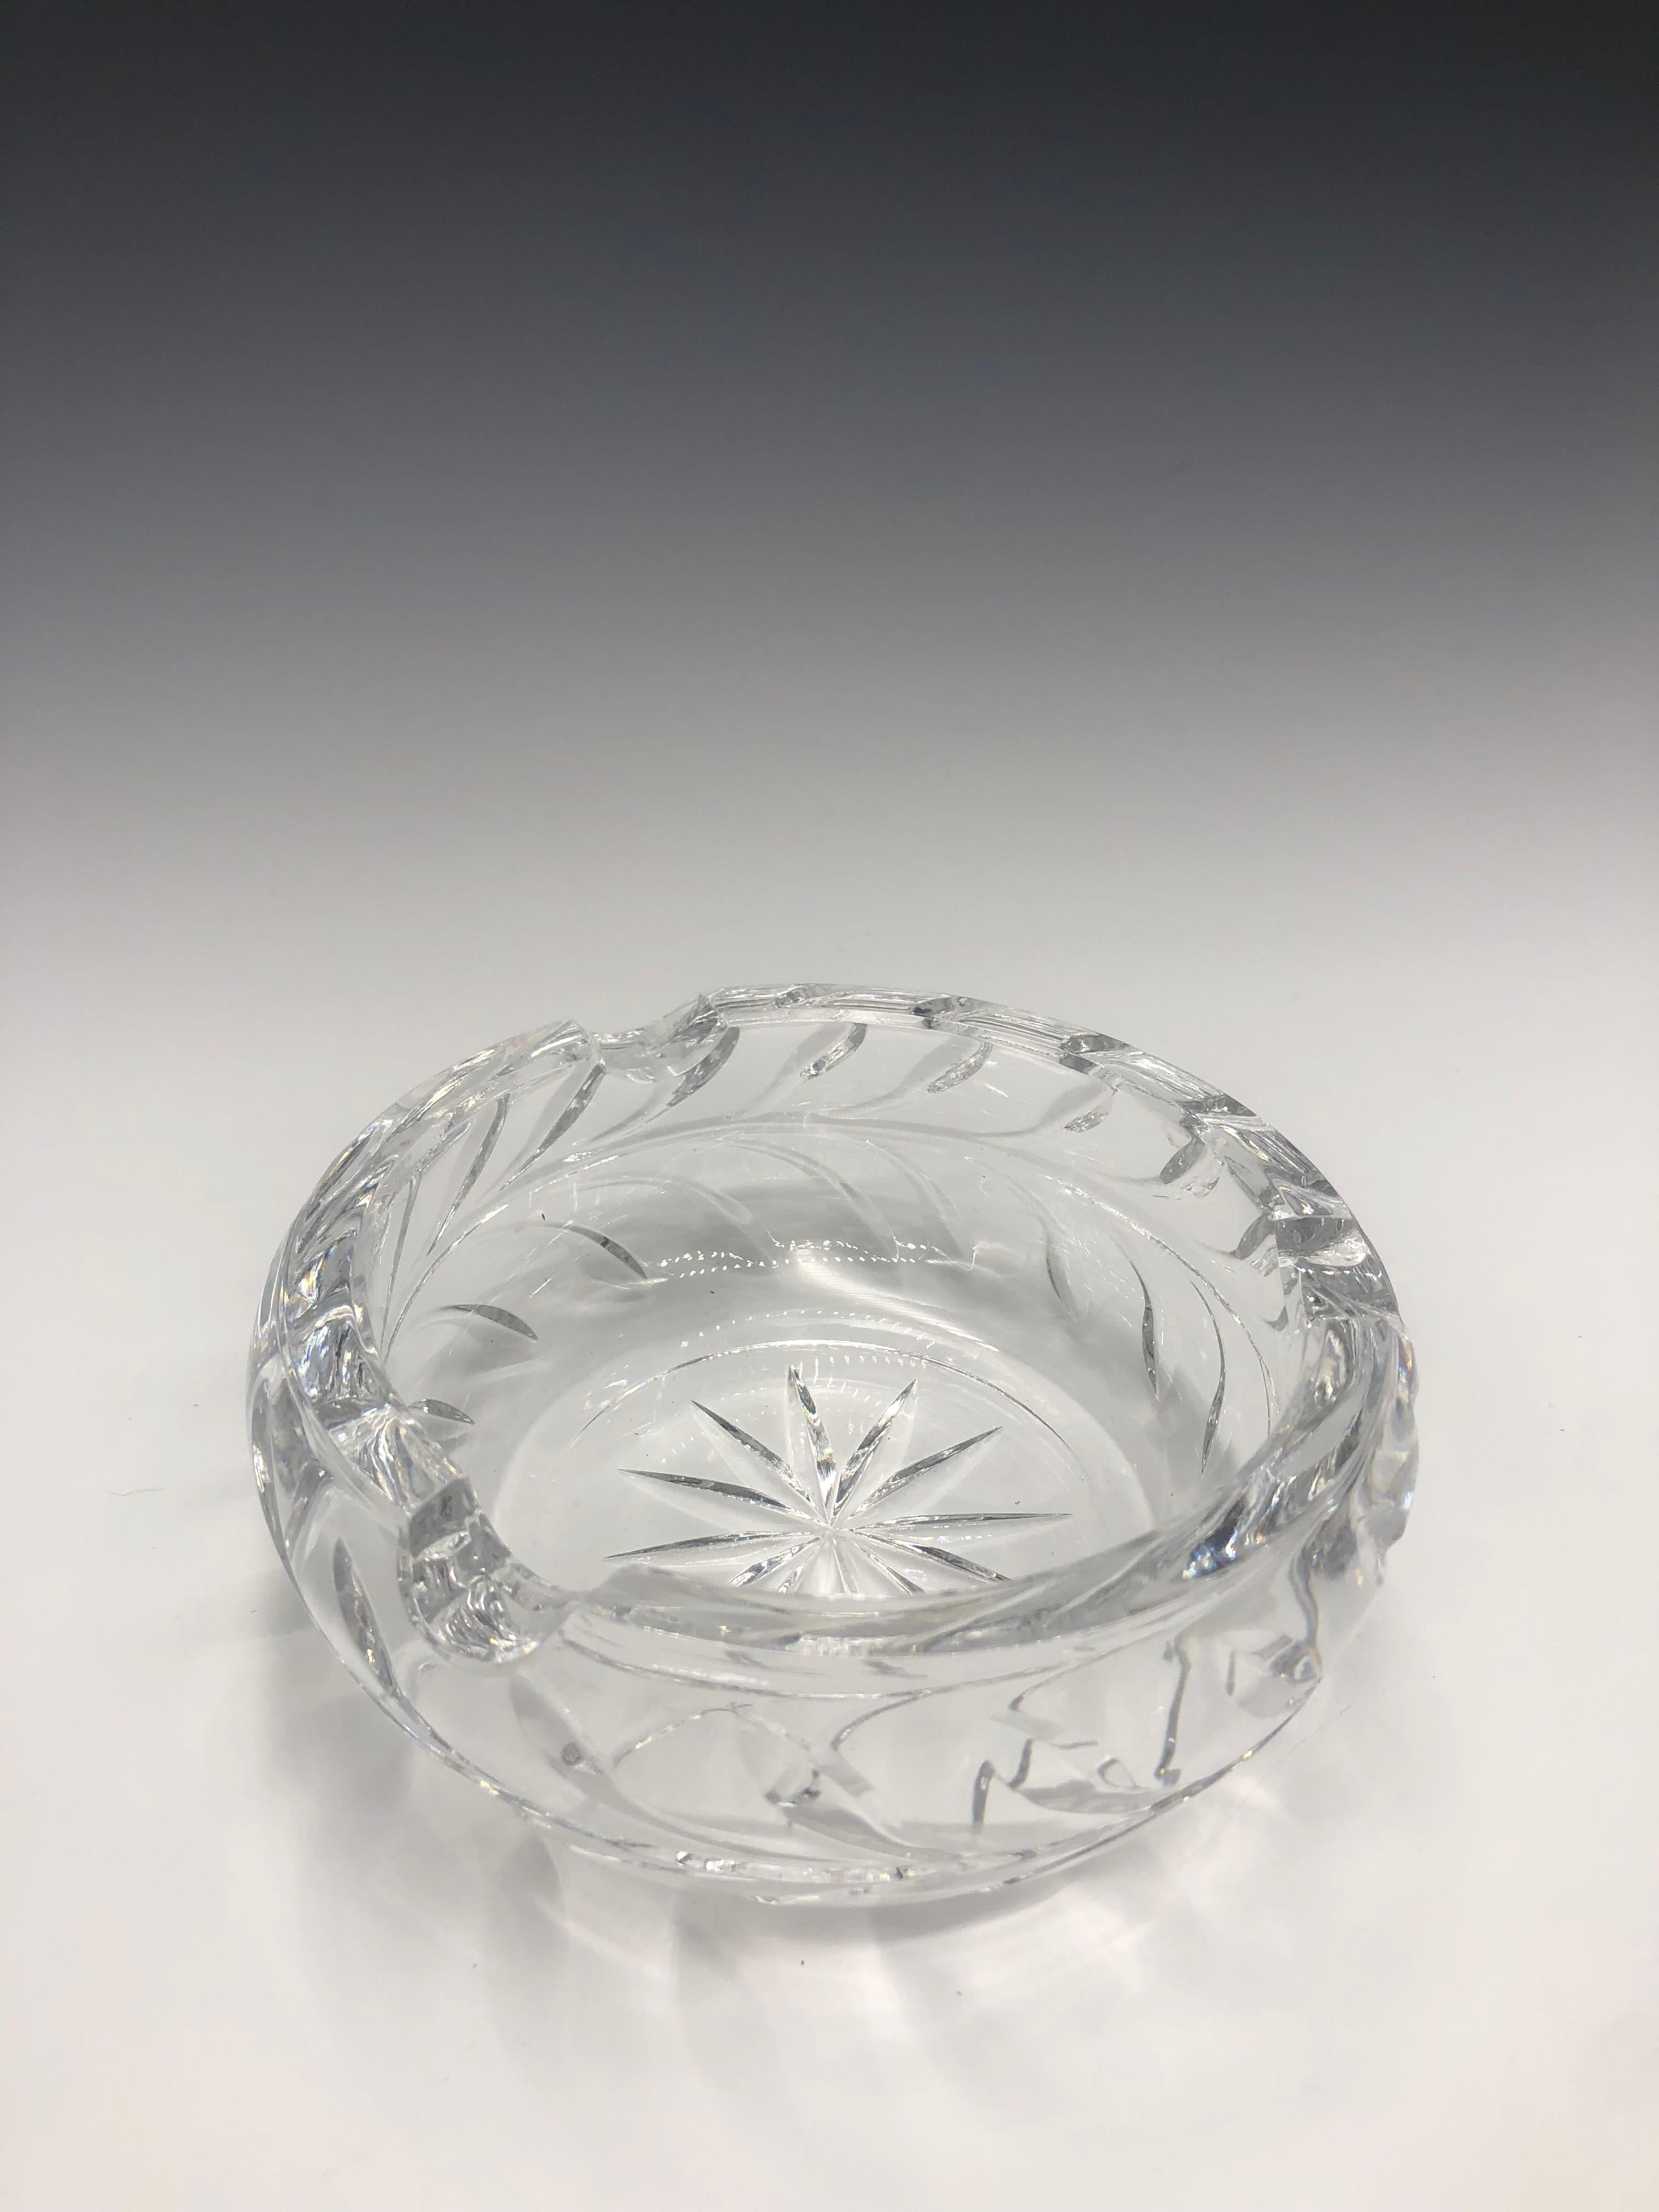 Cendrier en verre taillé en cristal rond, épais et clair, non marqué, en parfait état. 

Il est orné d'un motif étoilé et ensoleillé au centre et d'un motif en forme de feuille sur le pourtour. 

Il s'agit d'une jolie pièce décorative de table qui